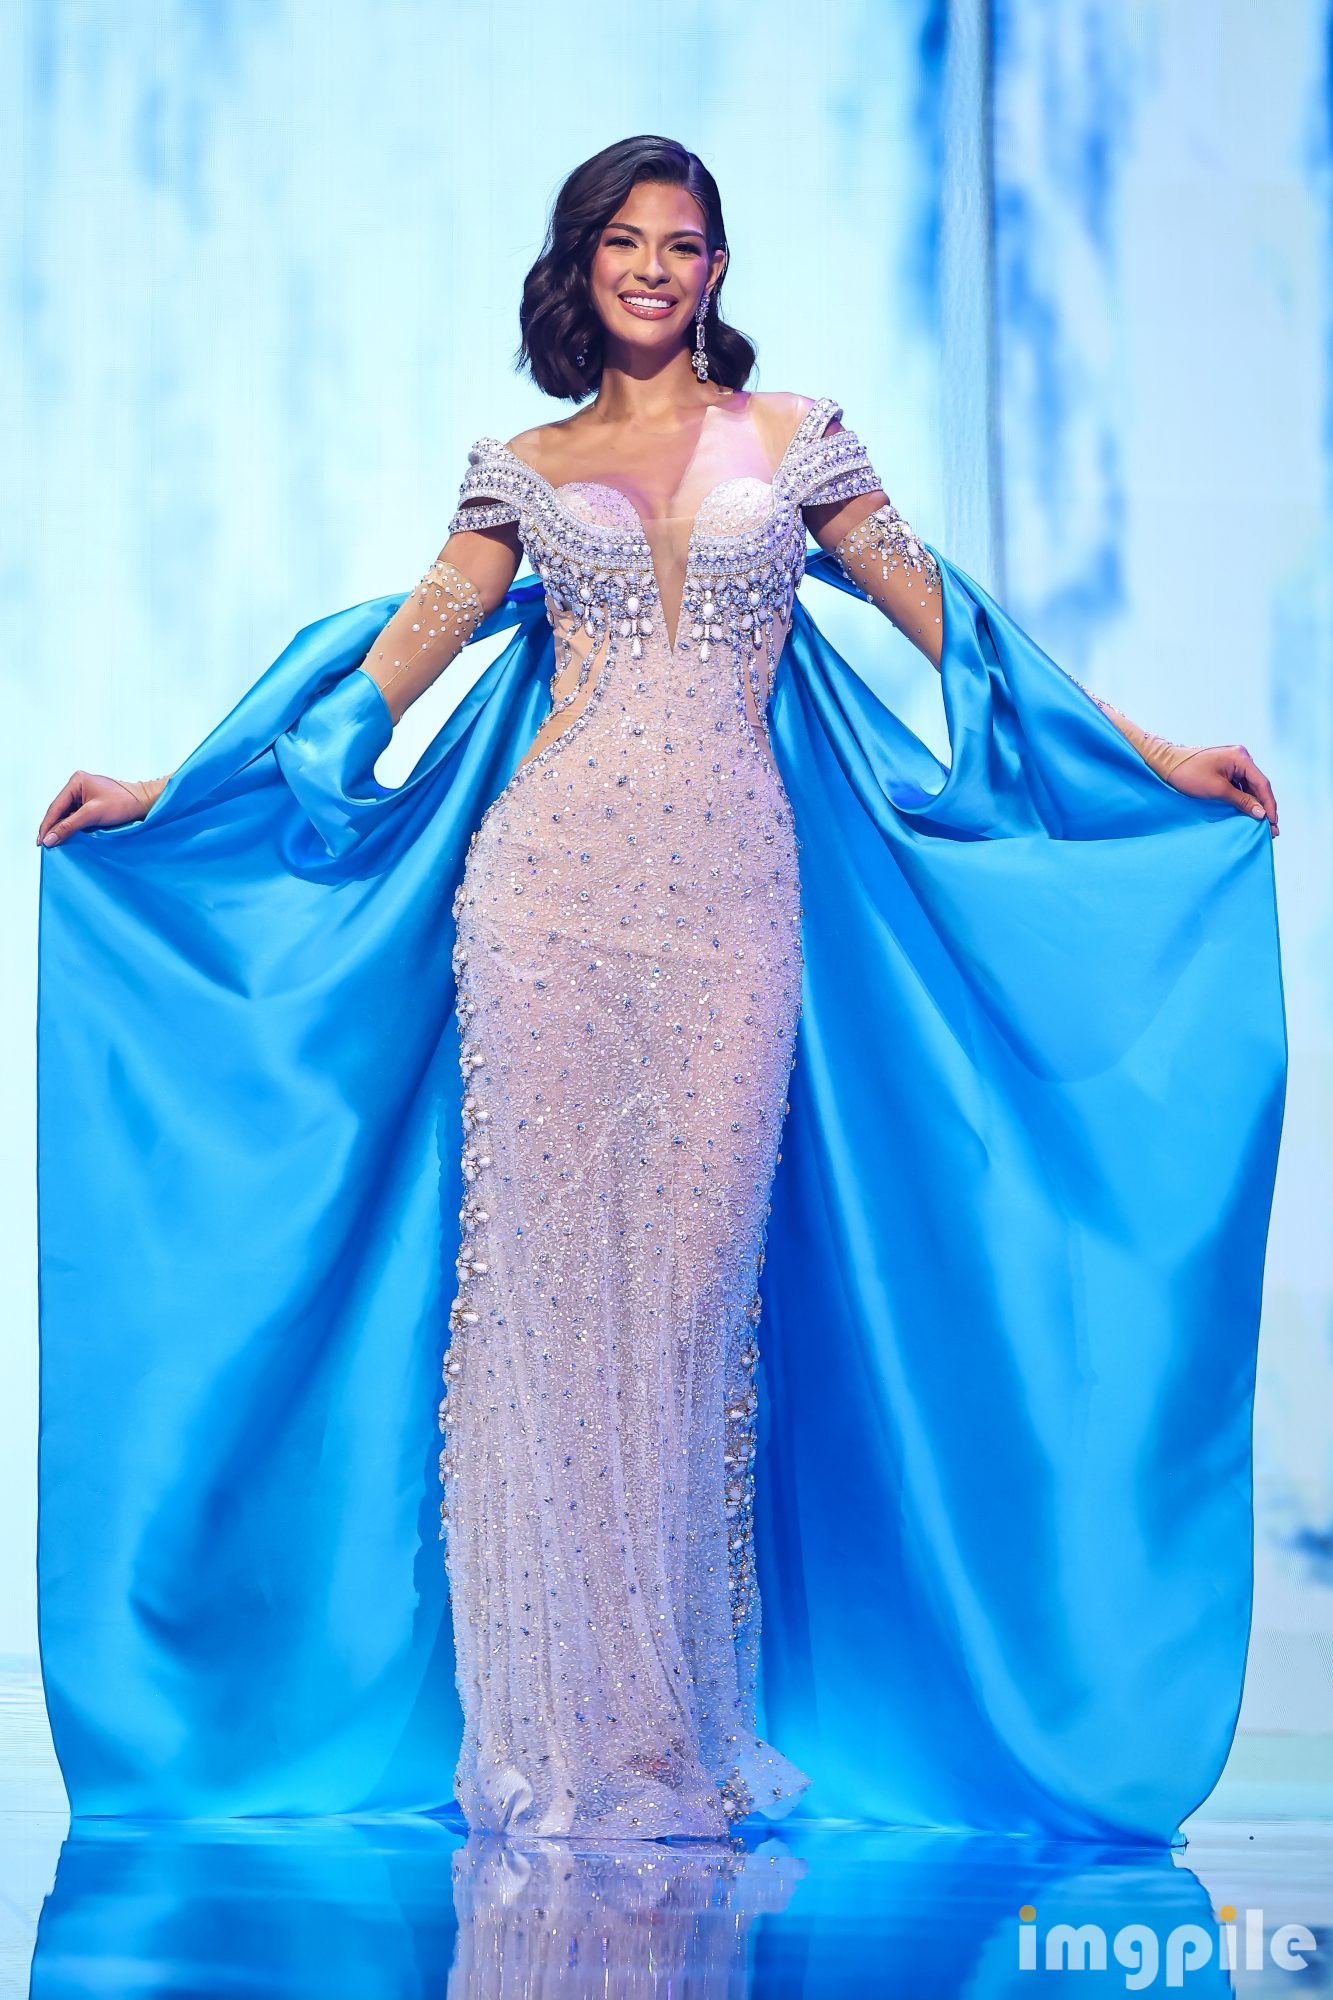 La Miss Universo Sheynnis Palacios y su vida soñada en Nueva York: "Quiero que me conozcan más allá de mi título" X9TnWC